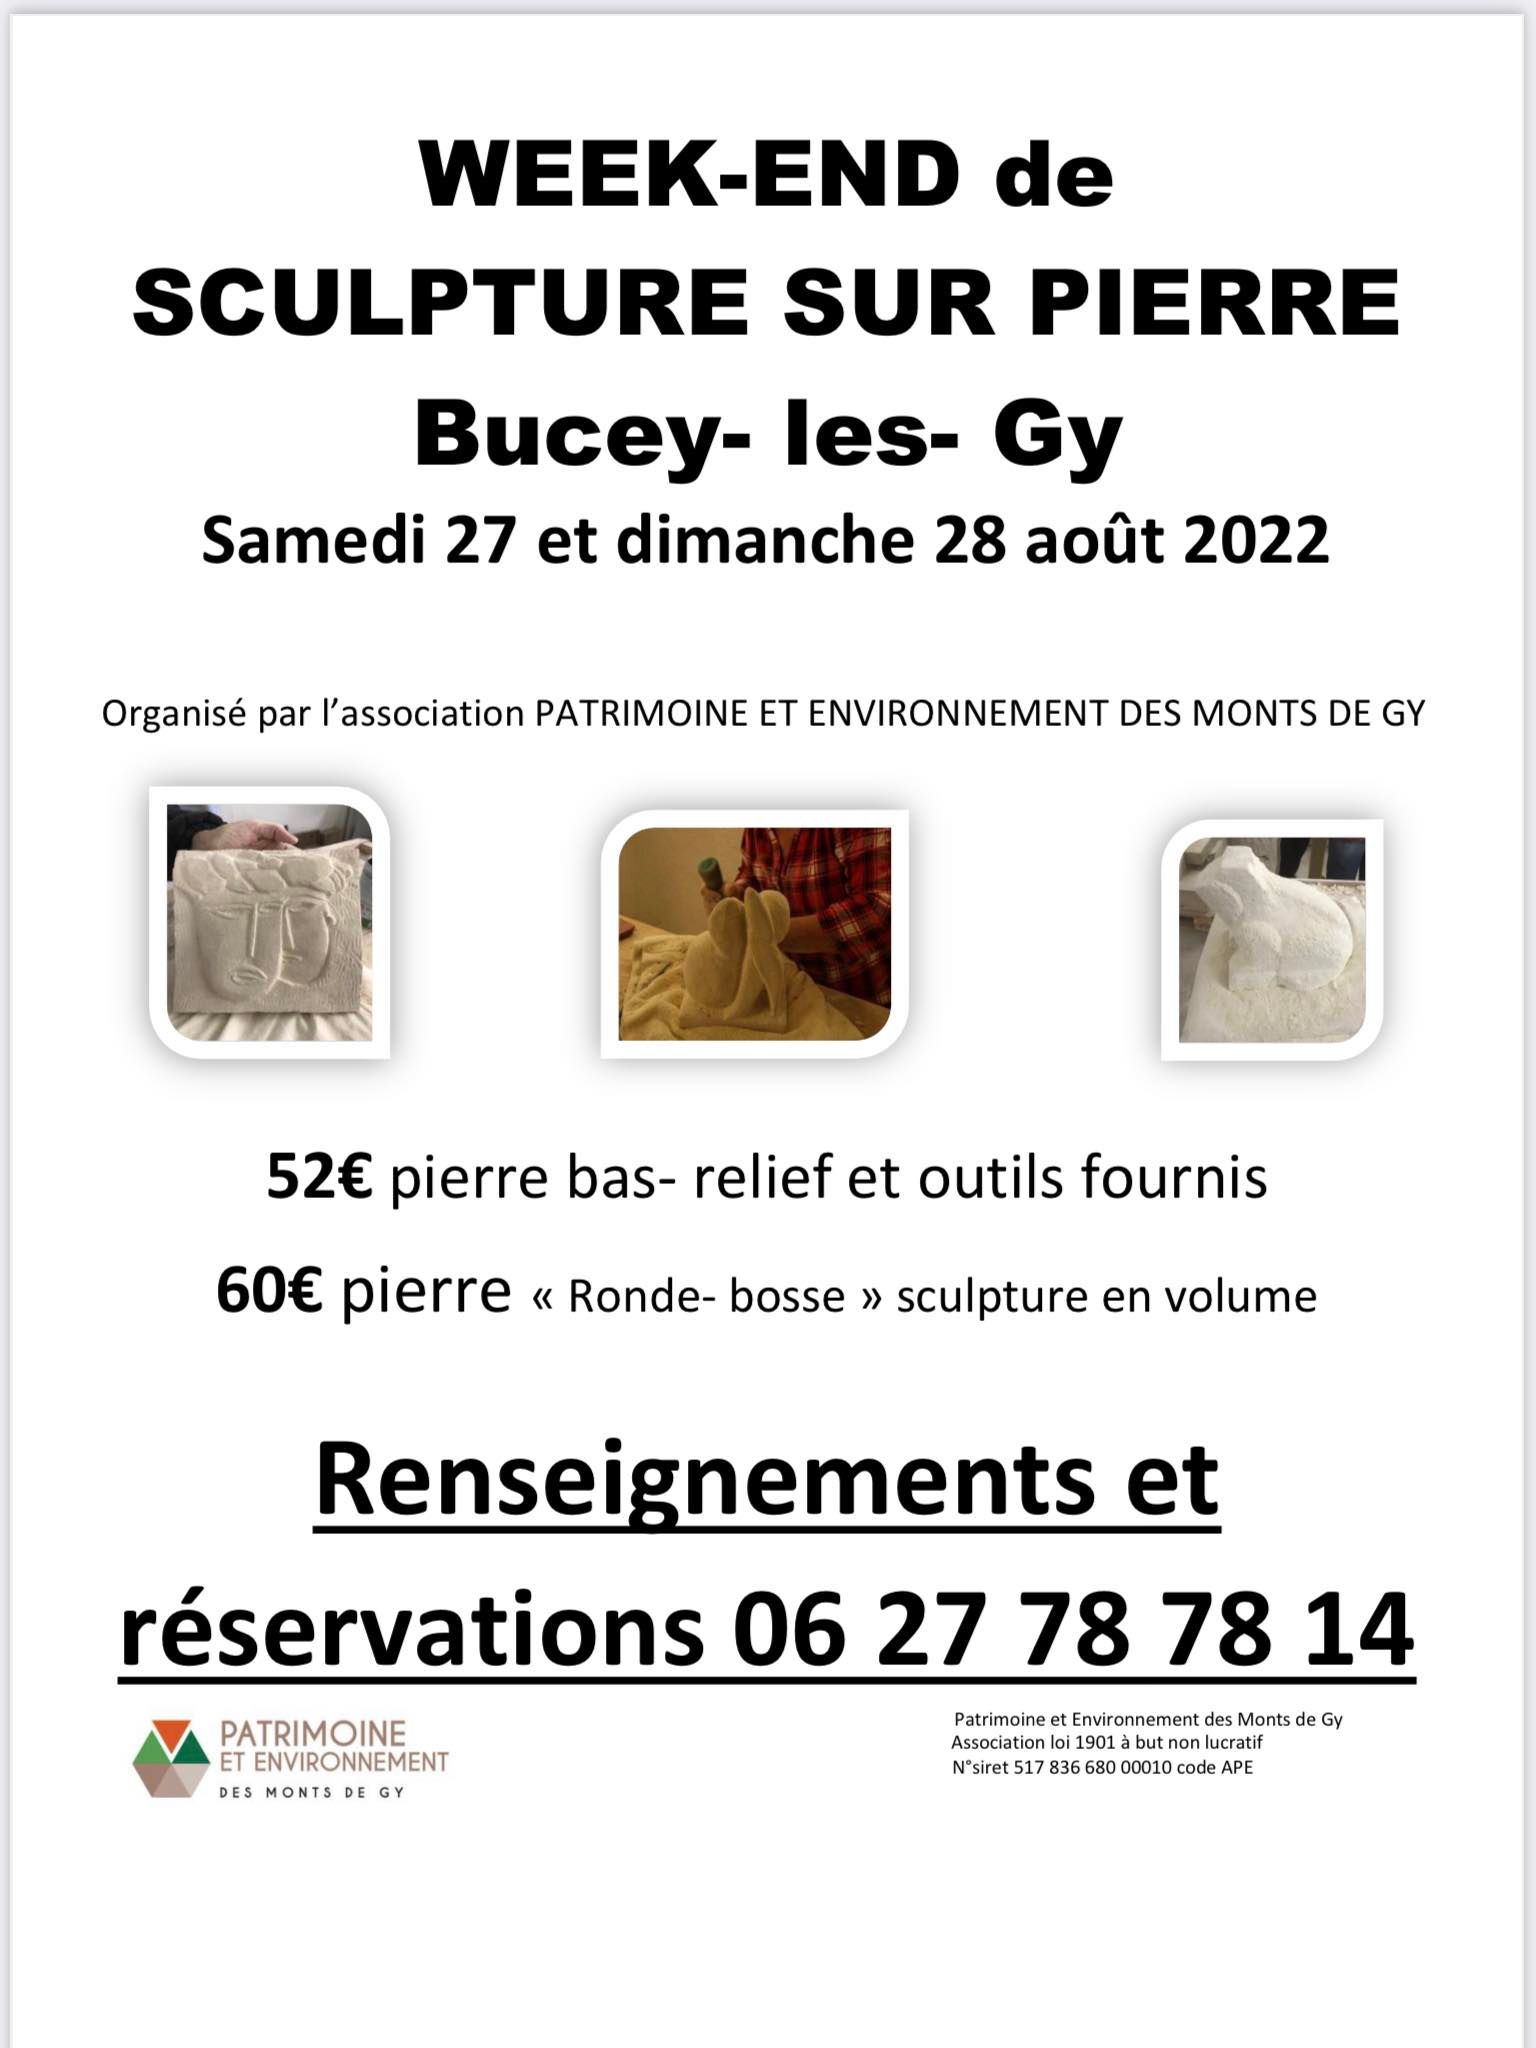 Week-end sculpture sur pierre à Bucey lès Gy 